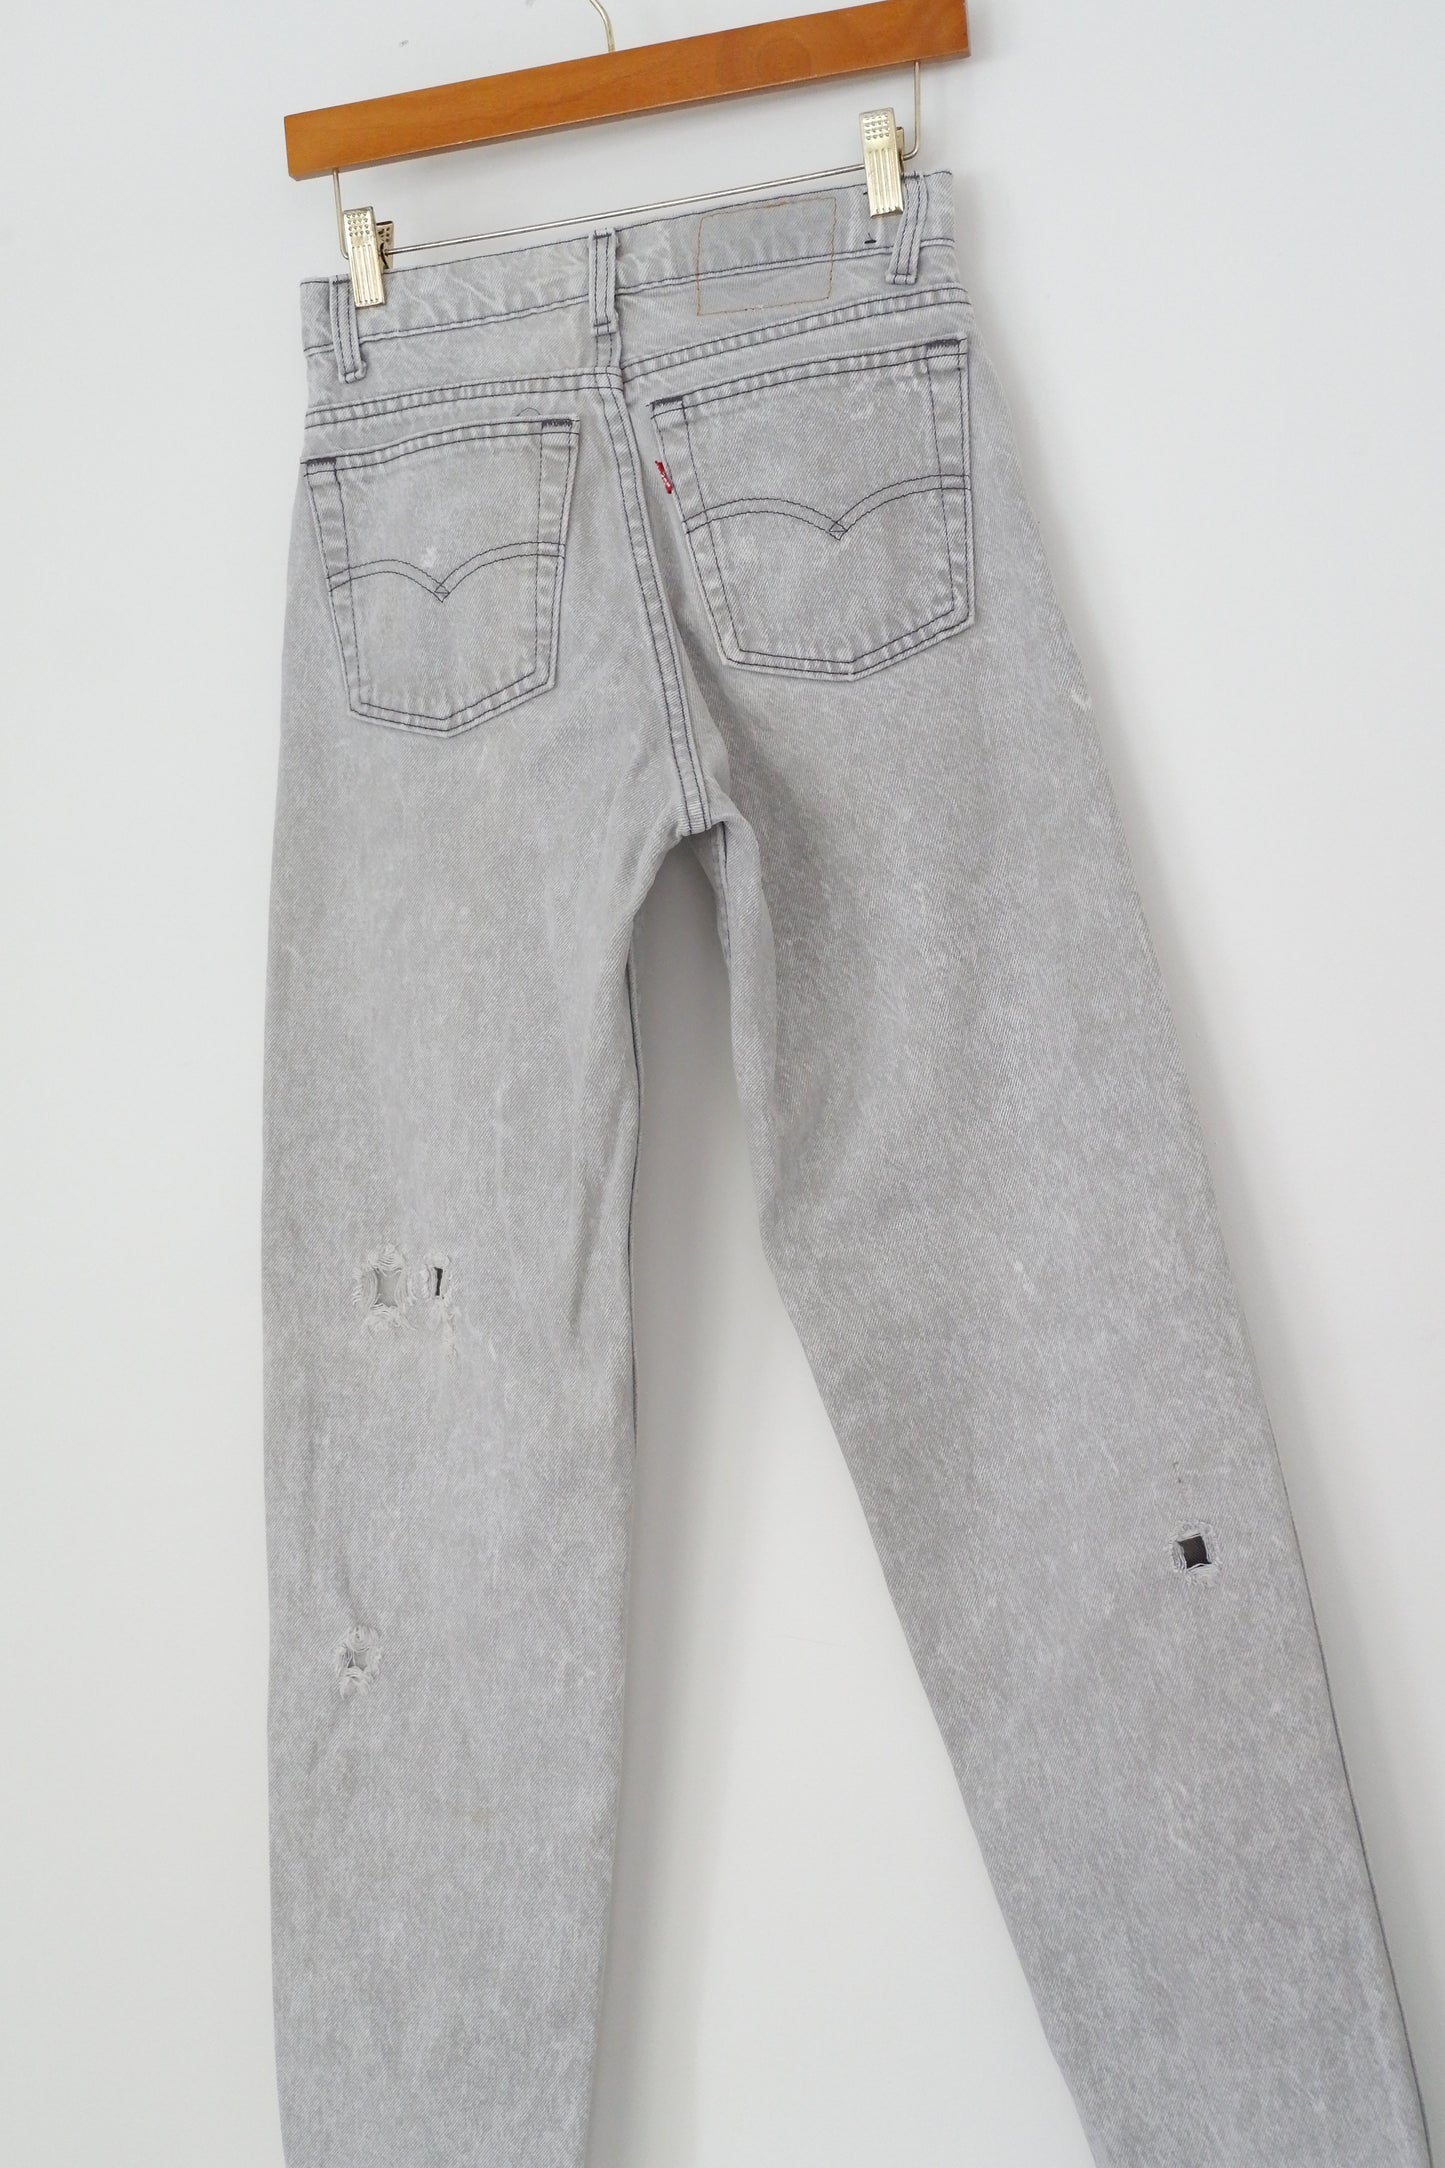 Levis Vintage 550 Grey Acid Wash Jeans - 26